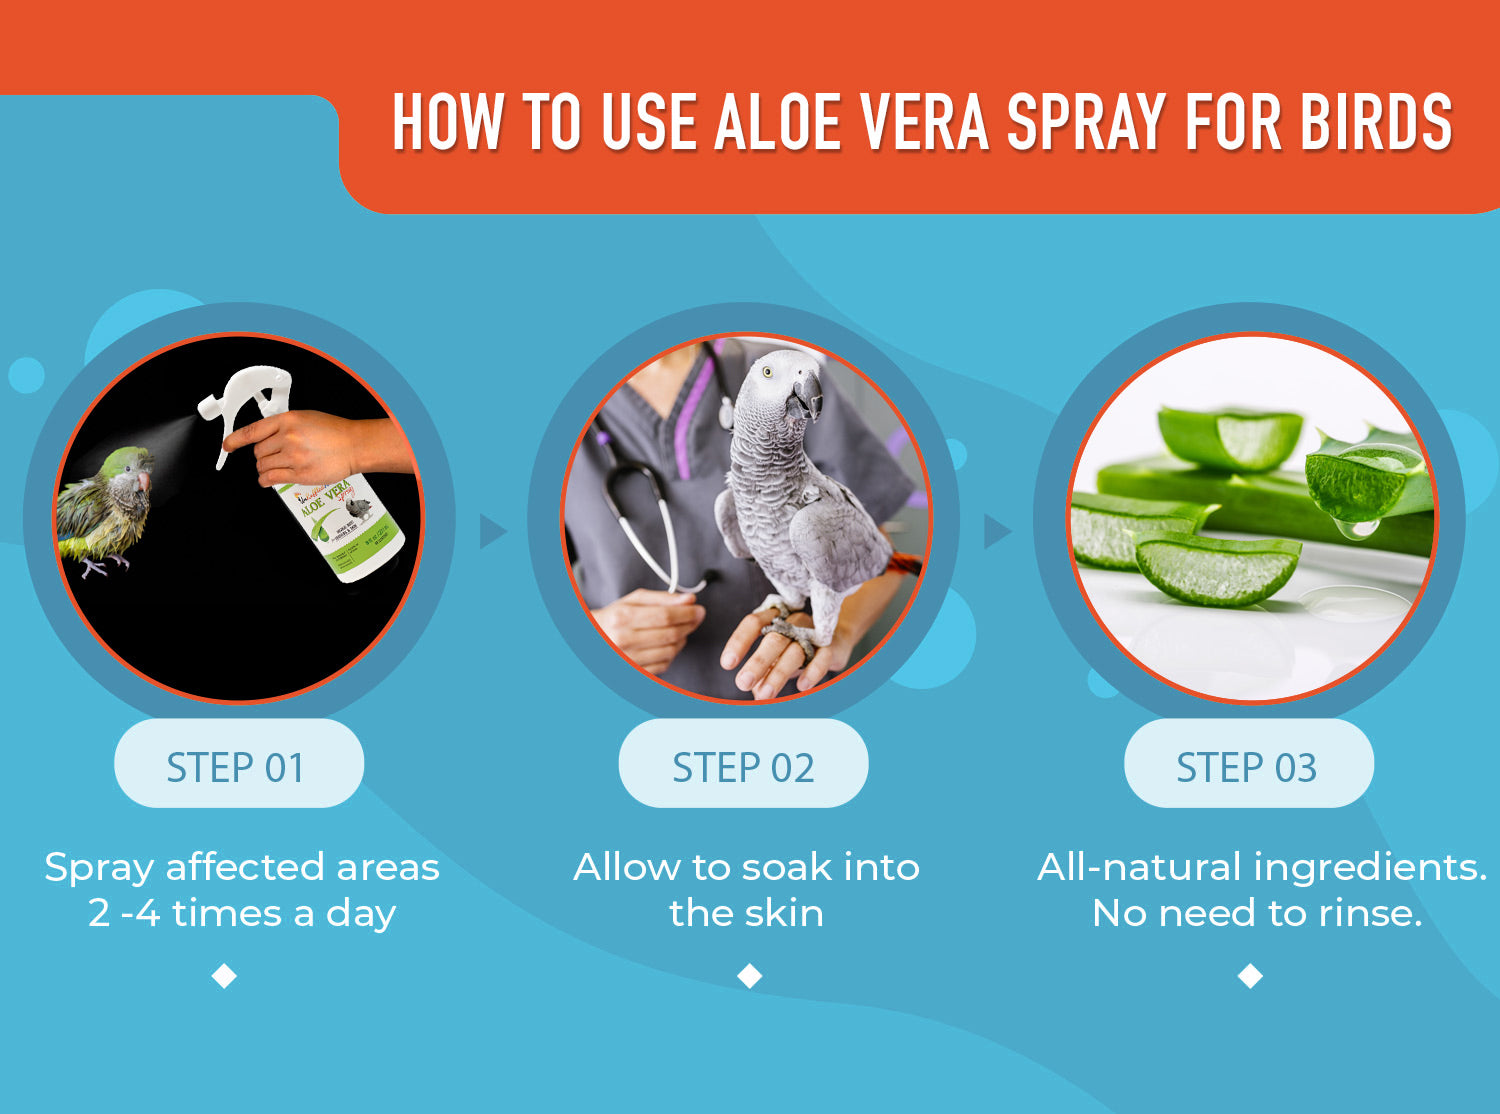 How to use aloe vera spray for birds